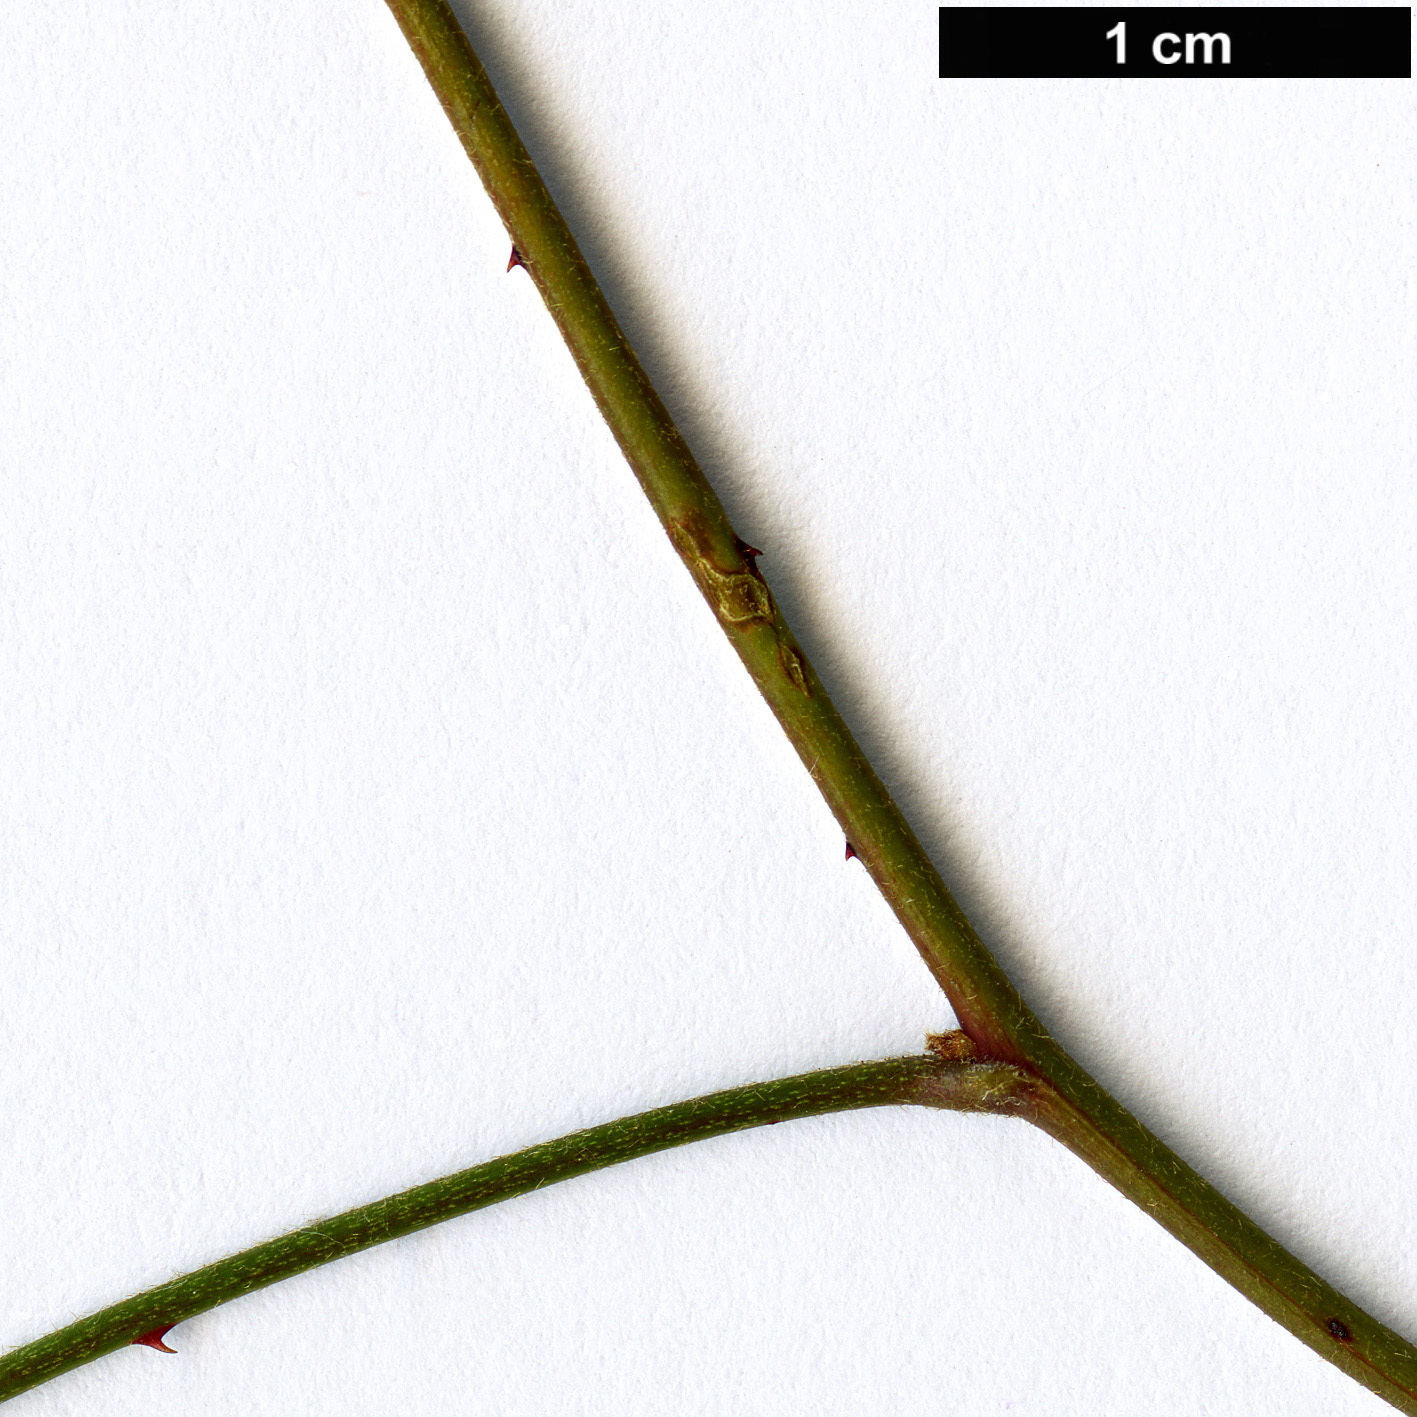 High resolution image: Family: Rosaceae - Genus: Rubus - Taxon: schmidelioides - SpeciesSub: var. pauperatus